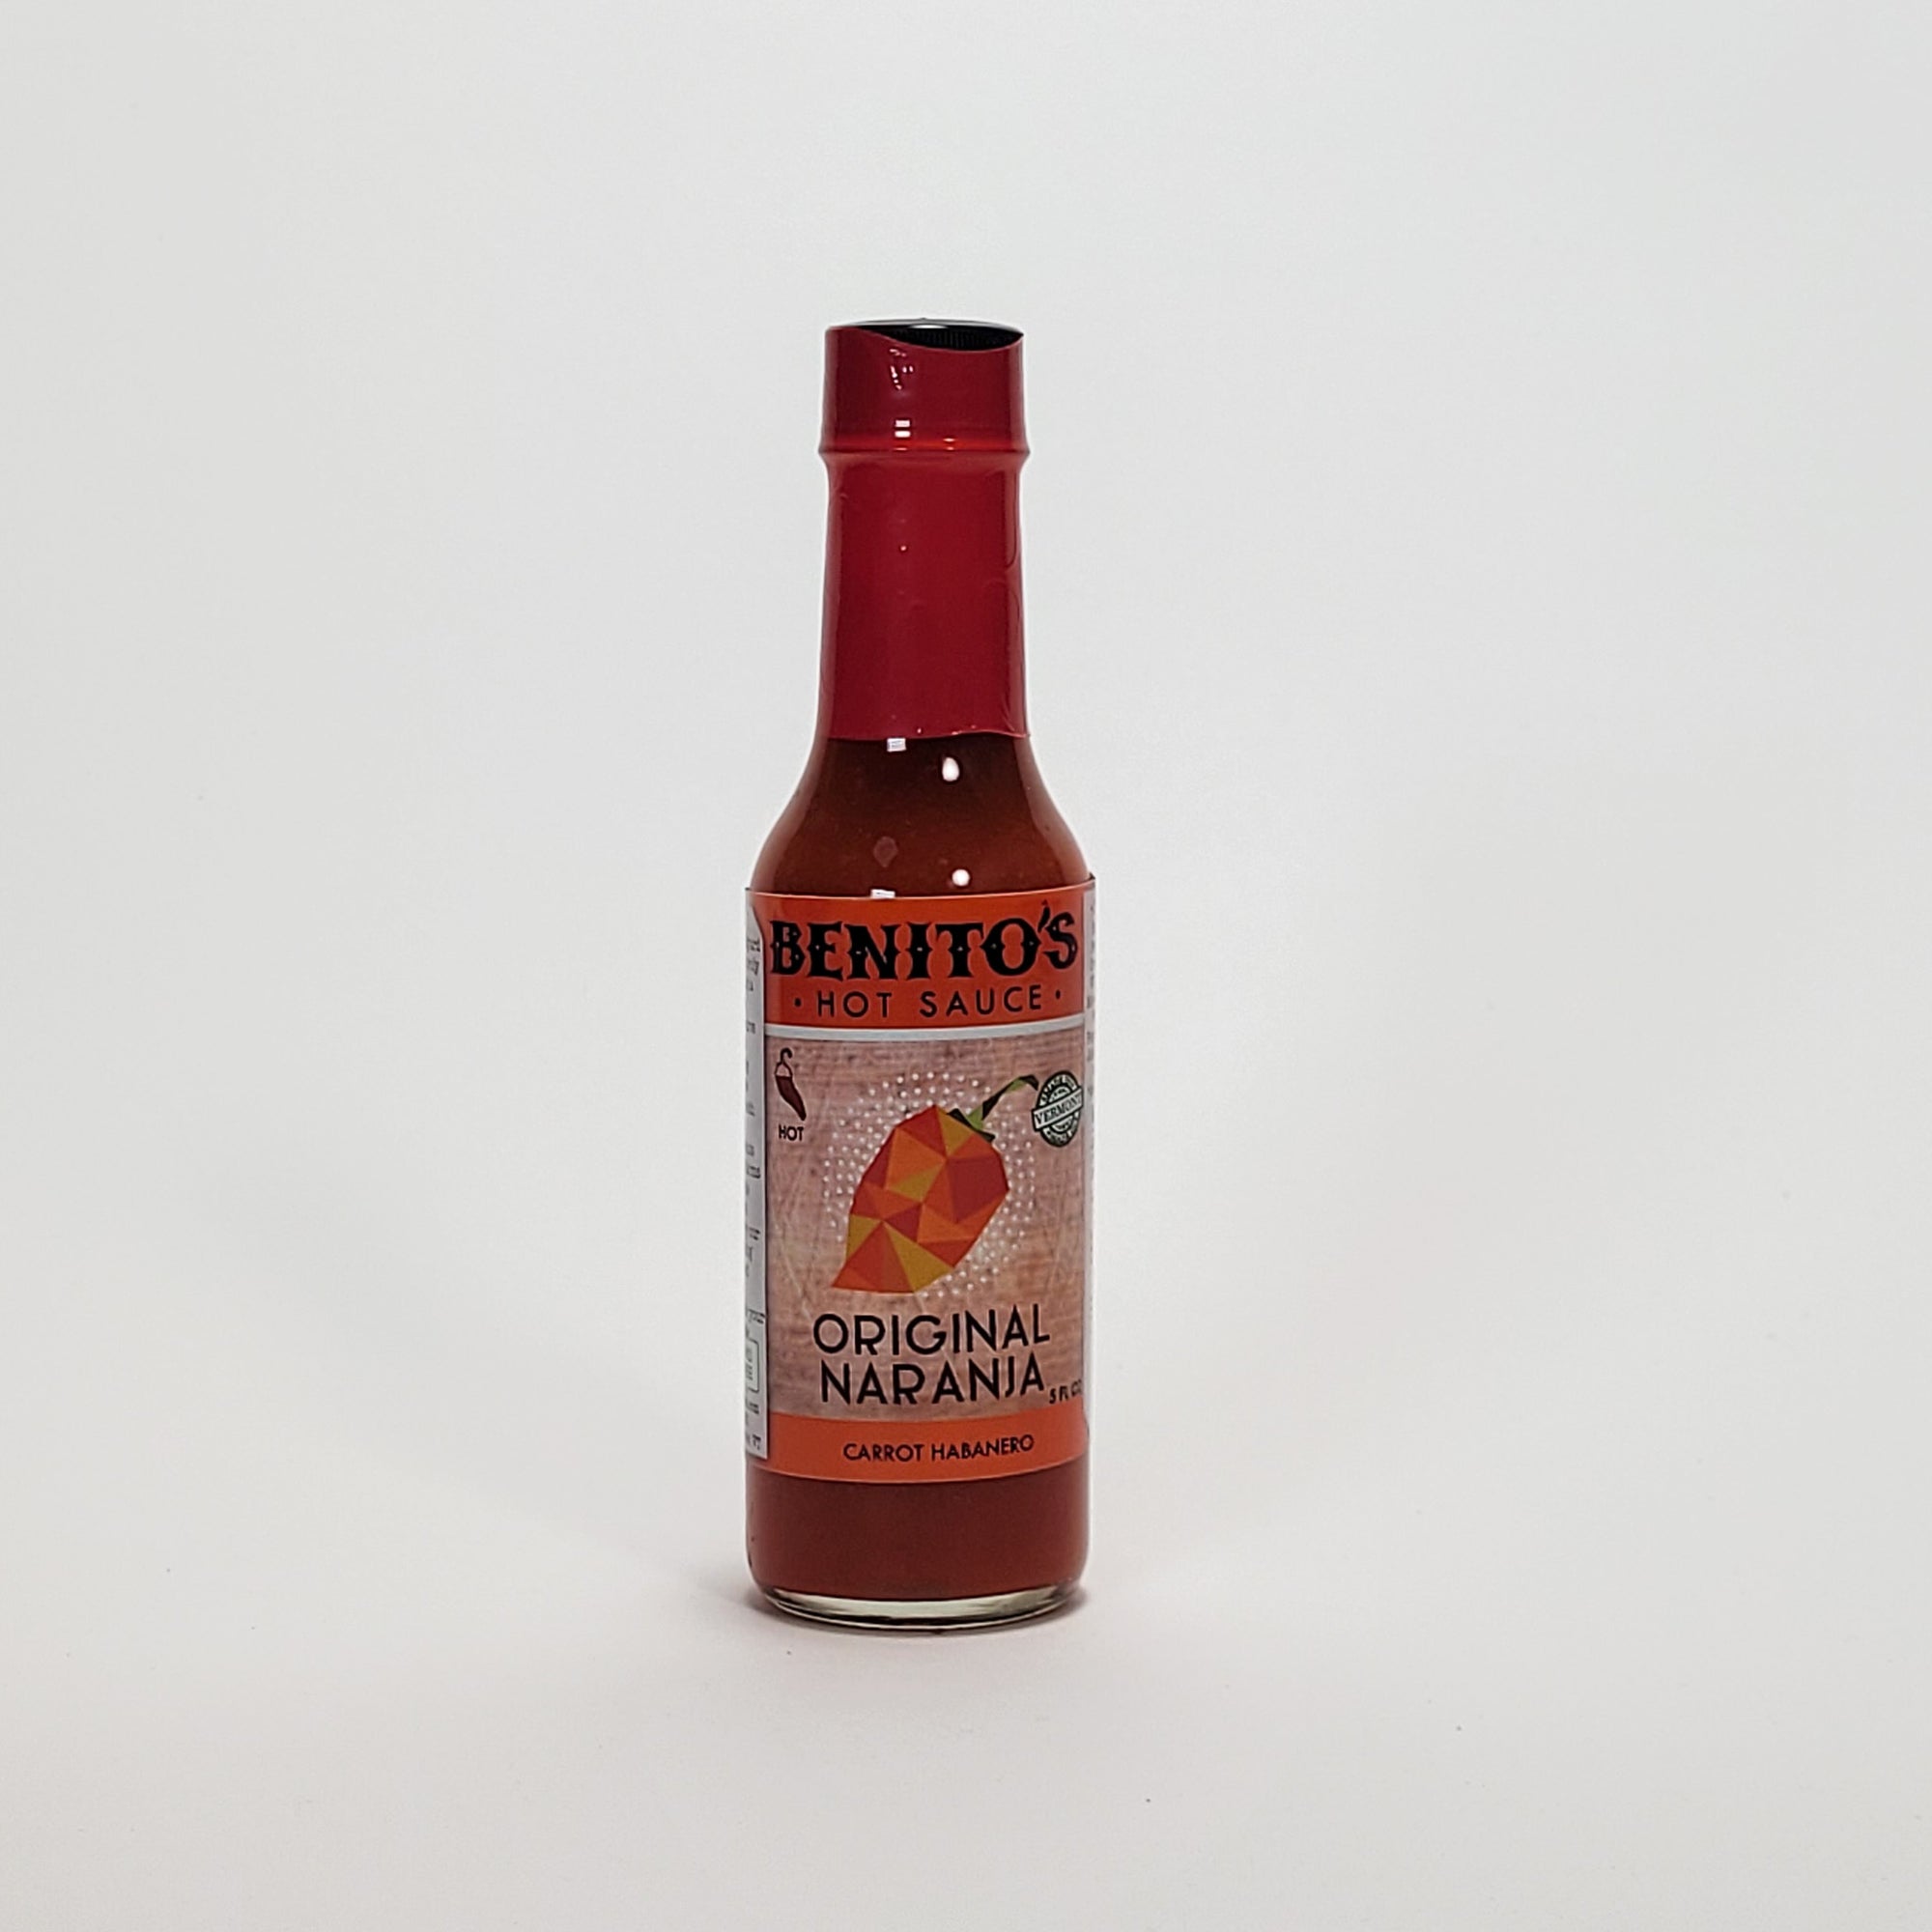 Benito's Original Naranja hot sauce